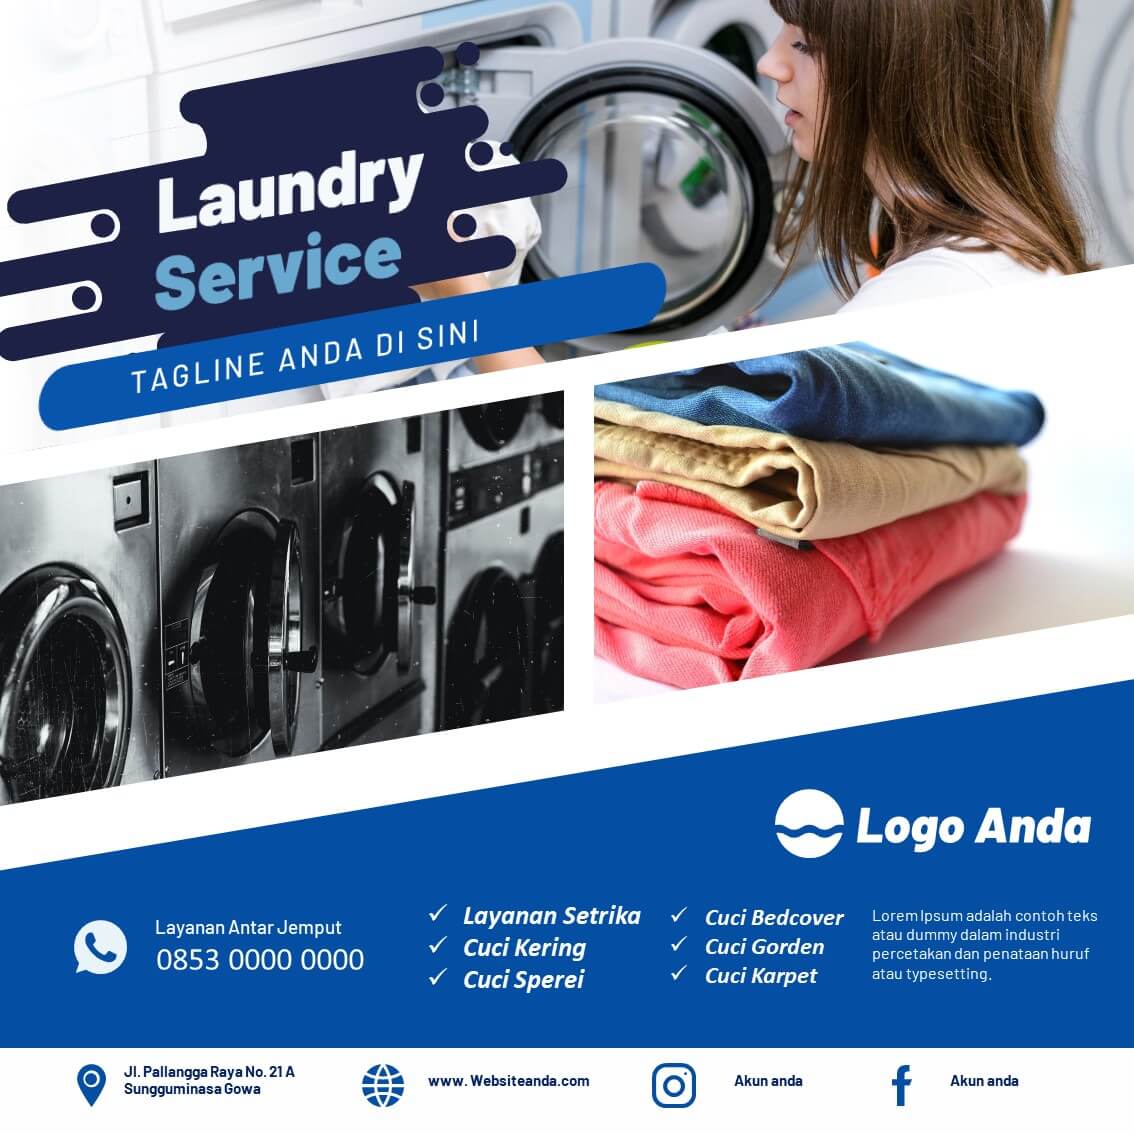 Laundry s. Laundry service logo. Стирка баннер. Laundry delivery logo. Баннер -20%.